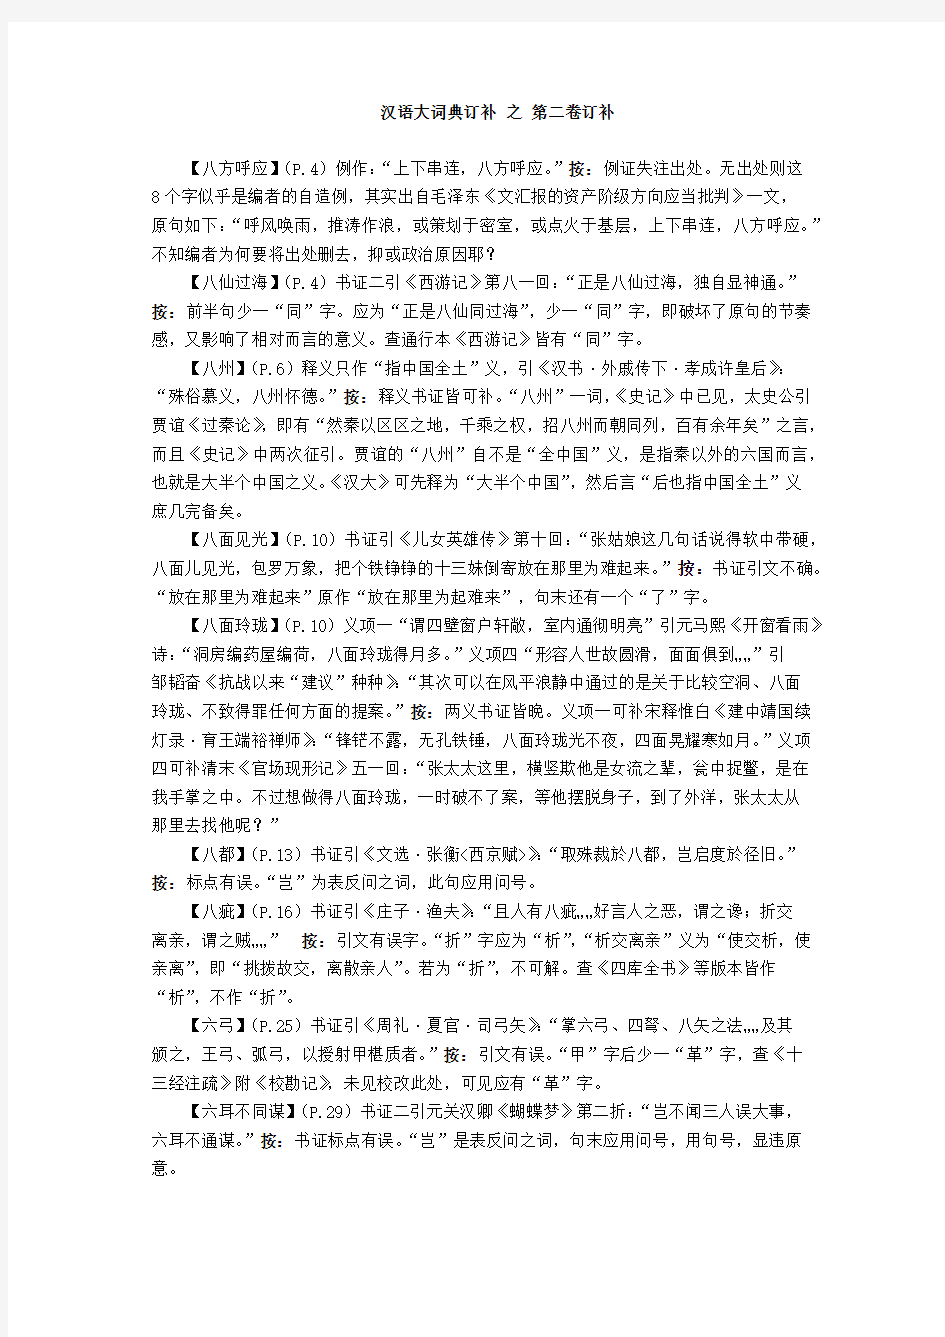 汉语大词典订补3 · 第二卷订补